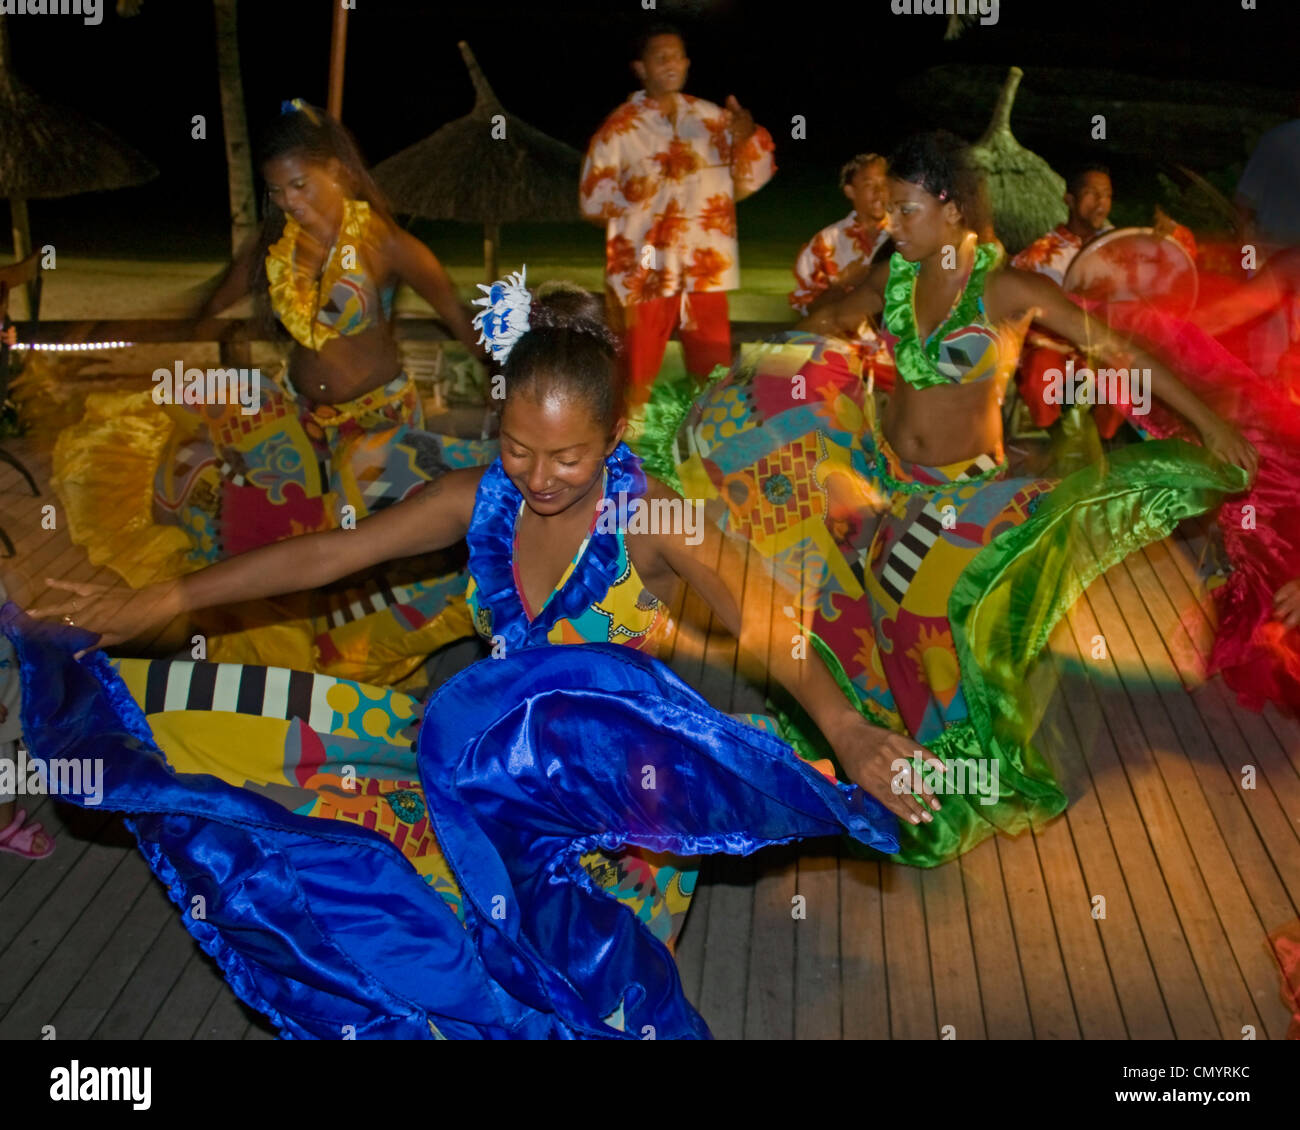 Sega traditionnel dans l'exécution de danseur, véranda de l'hôtel Troux aux Biches, Ile Maurice, Afrique du Sud Banque D'Images